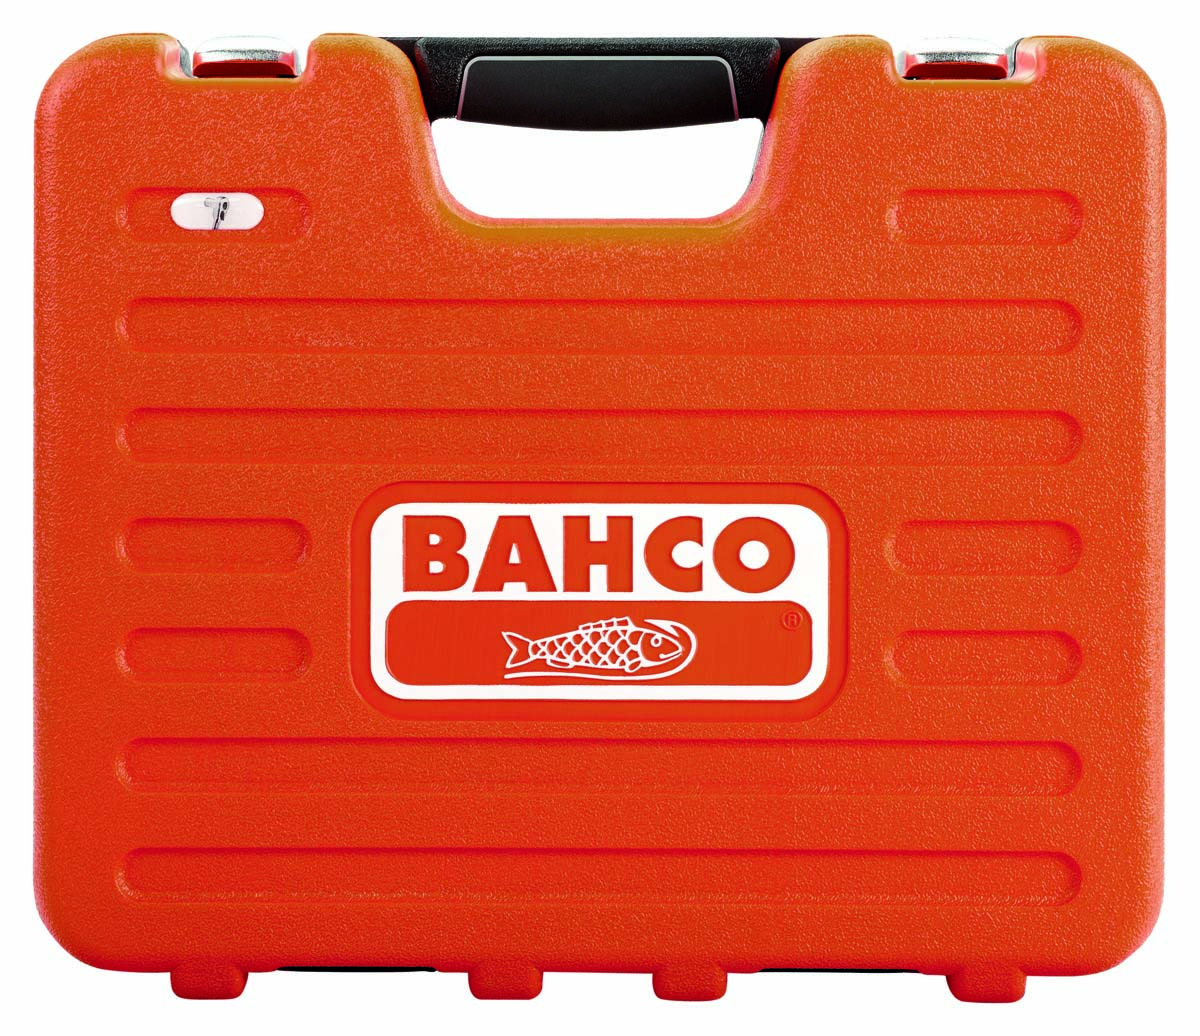 BAHCO 1/4" und 1/2" Steckschlüssel-Garnitur (41-teilig) S410